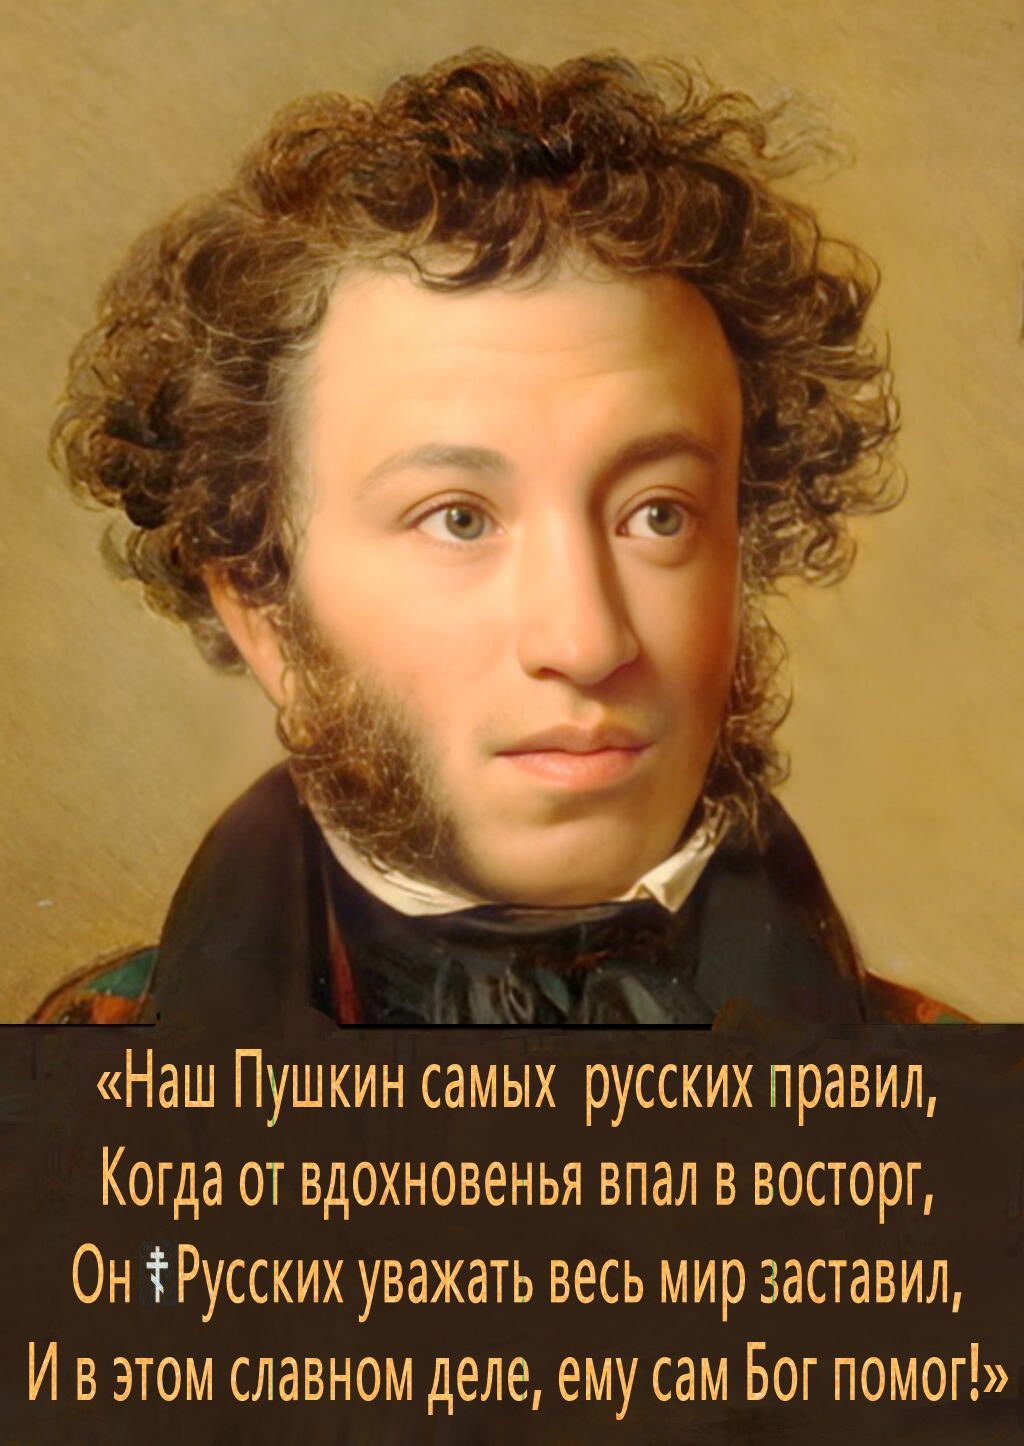 225 лет назад родился поэт, чьё имя стало символом русской культуры.. «Именно 8 июня по н.ст. мы должны отмечать день рождения Пушкина, если хотим соблюсти его духовный смысл таким, каким он был изначально».